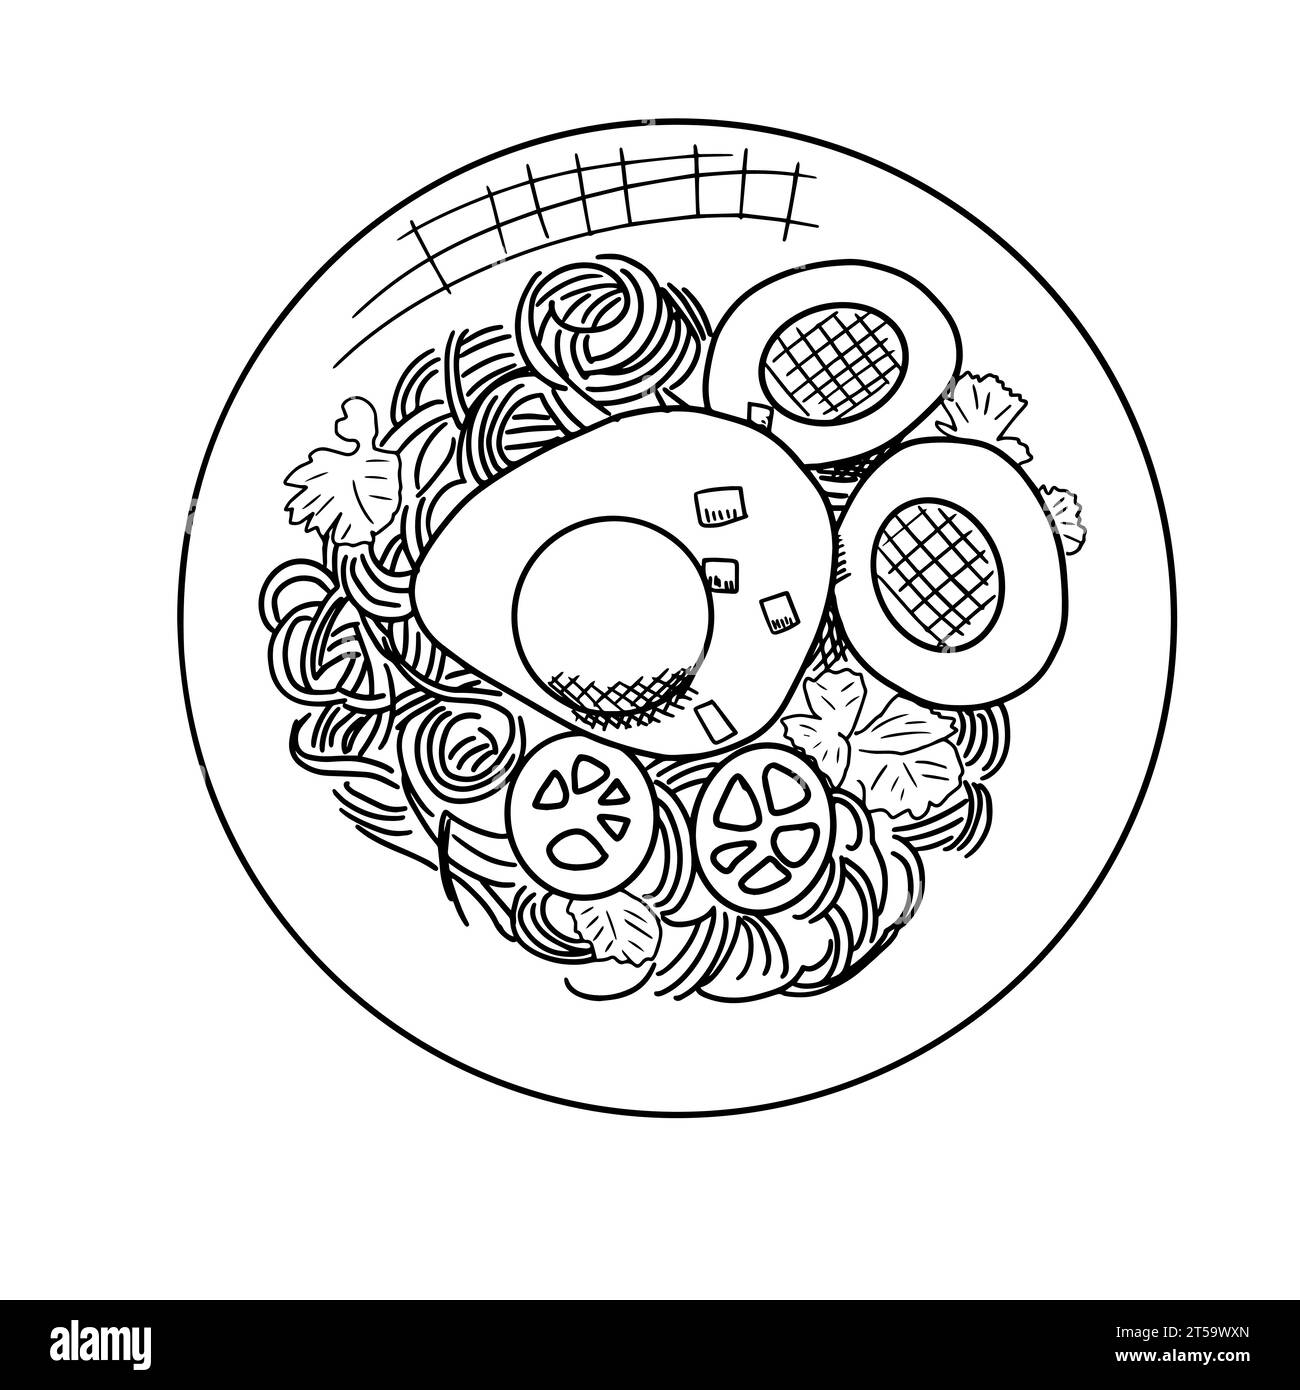 Illustrazione vettoriale disegnata a mano di tagliatelle con uova e verdure nel recipiente. Illustrazione Vettoriale